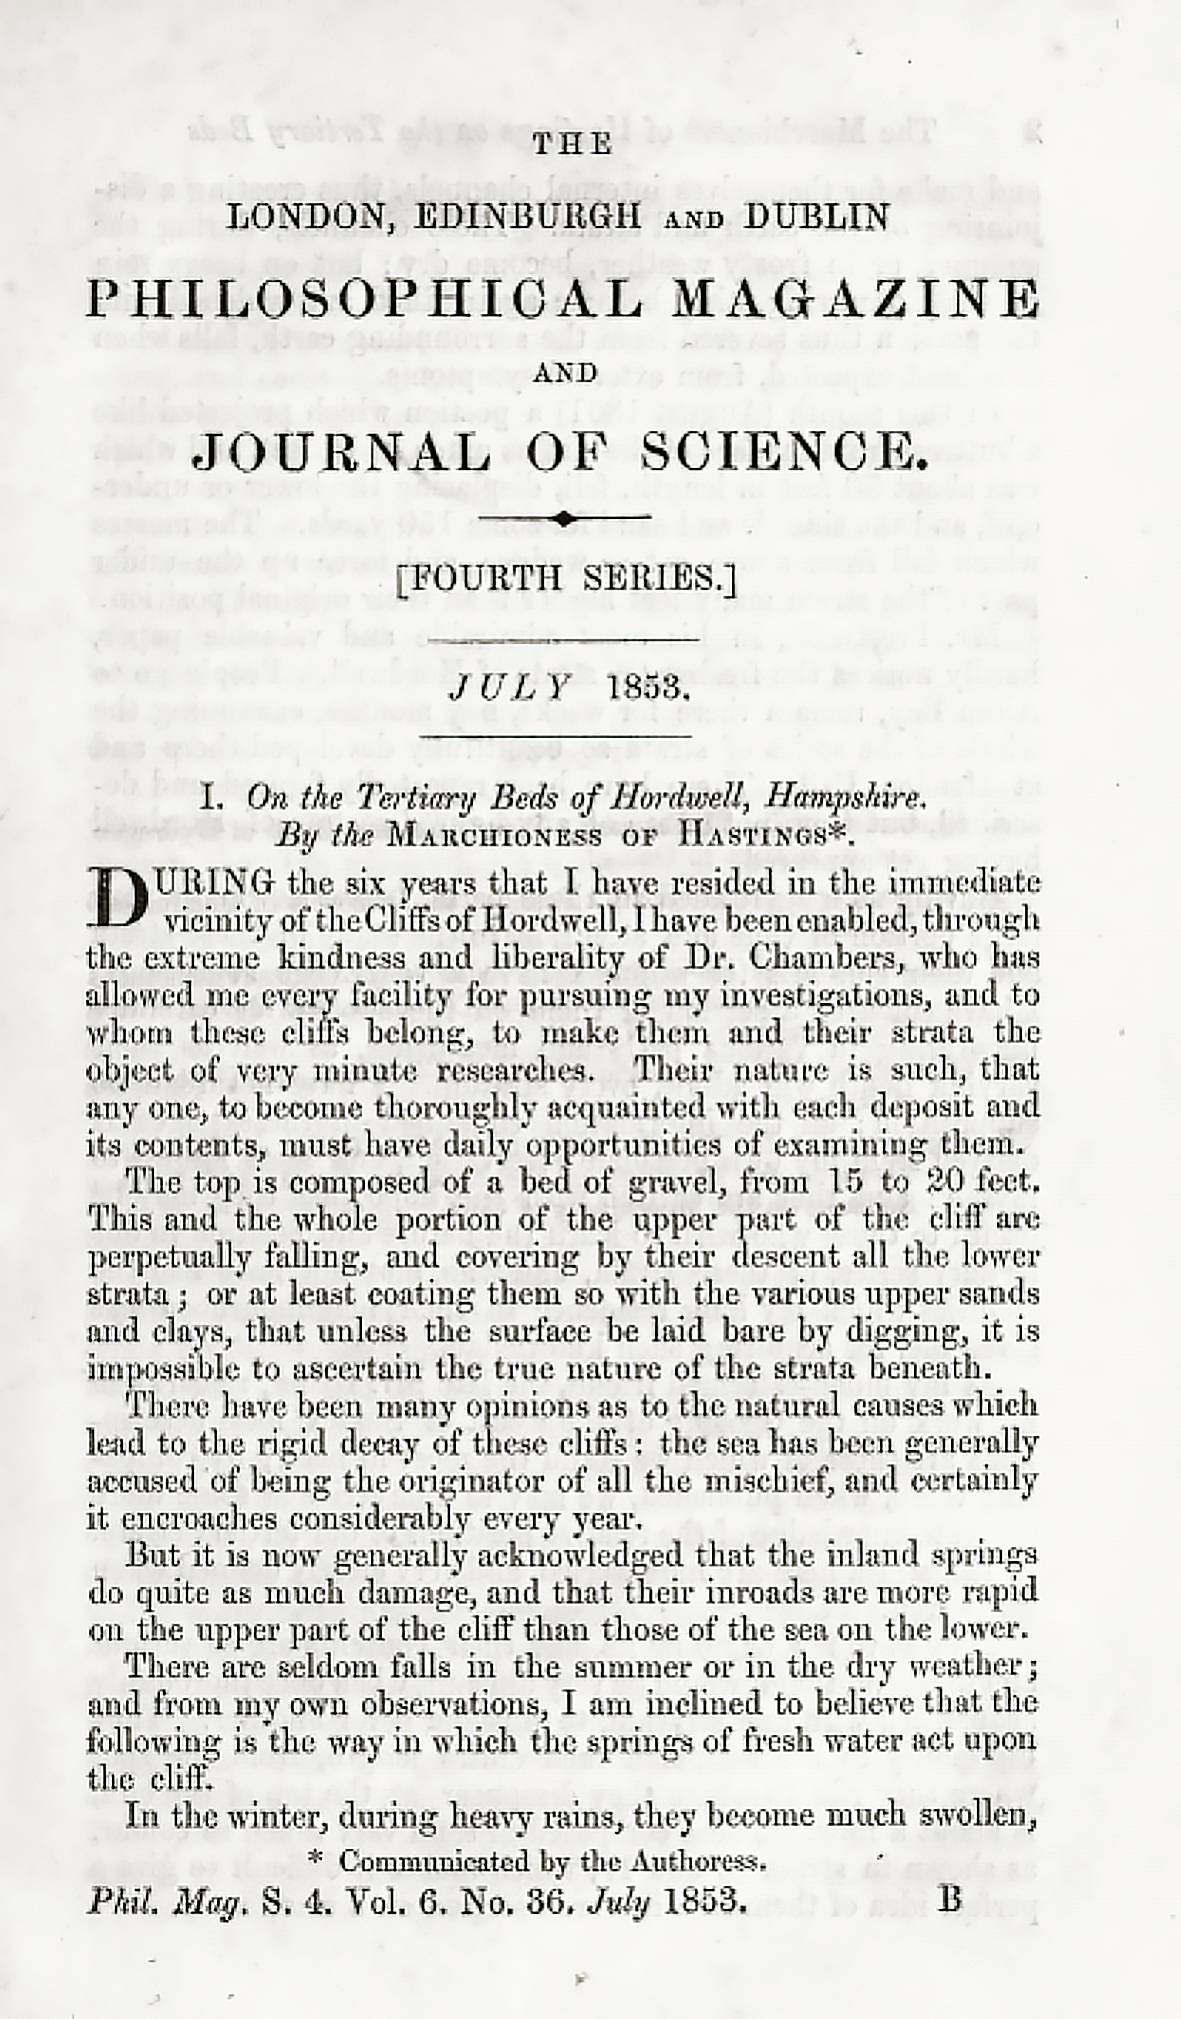 Première page de l’article de Barbara Yelverton, marquise de Hastings (1810-1858), publié en 1853 sur les niveaux d’âge tertiaire du Hampshire. La communication a également été faite par elle-même (voir l’astérisque au bas du document).